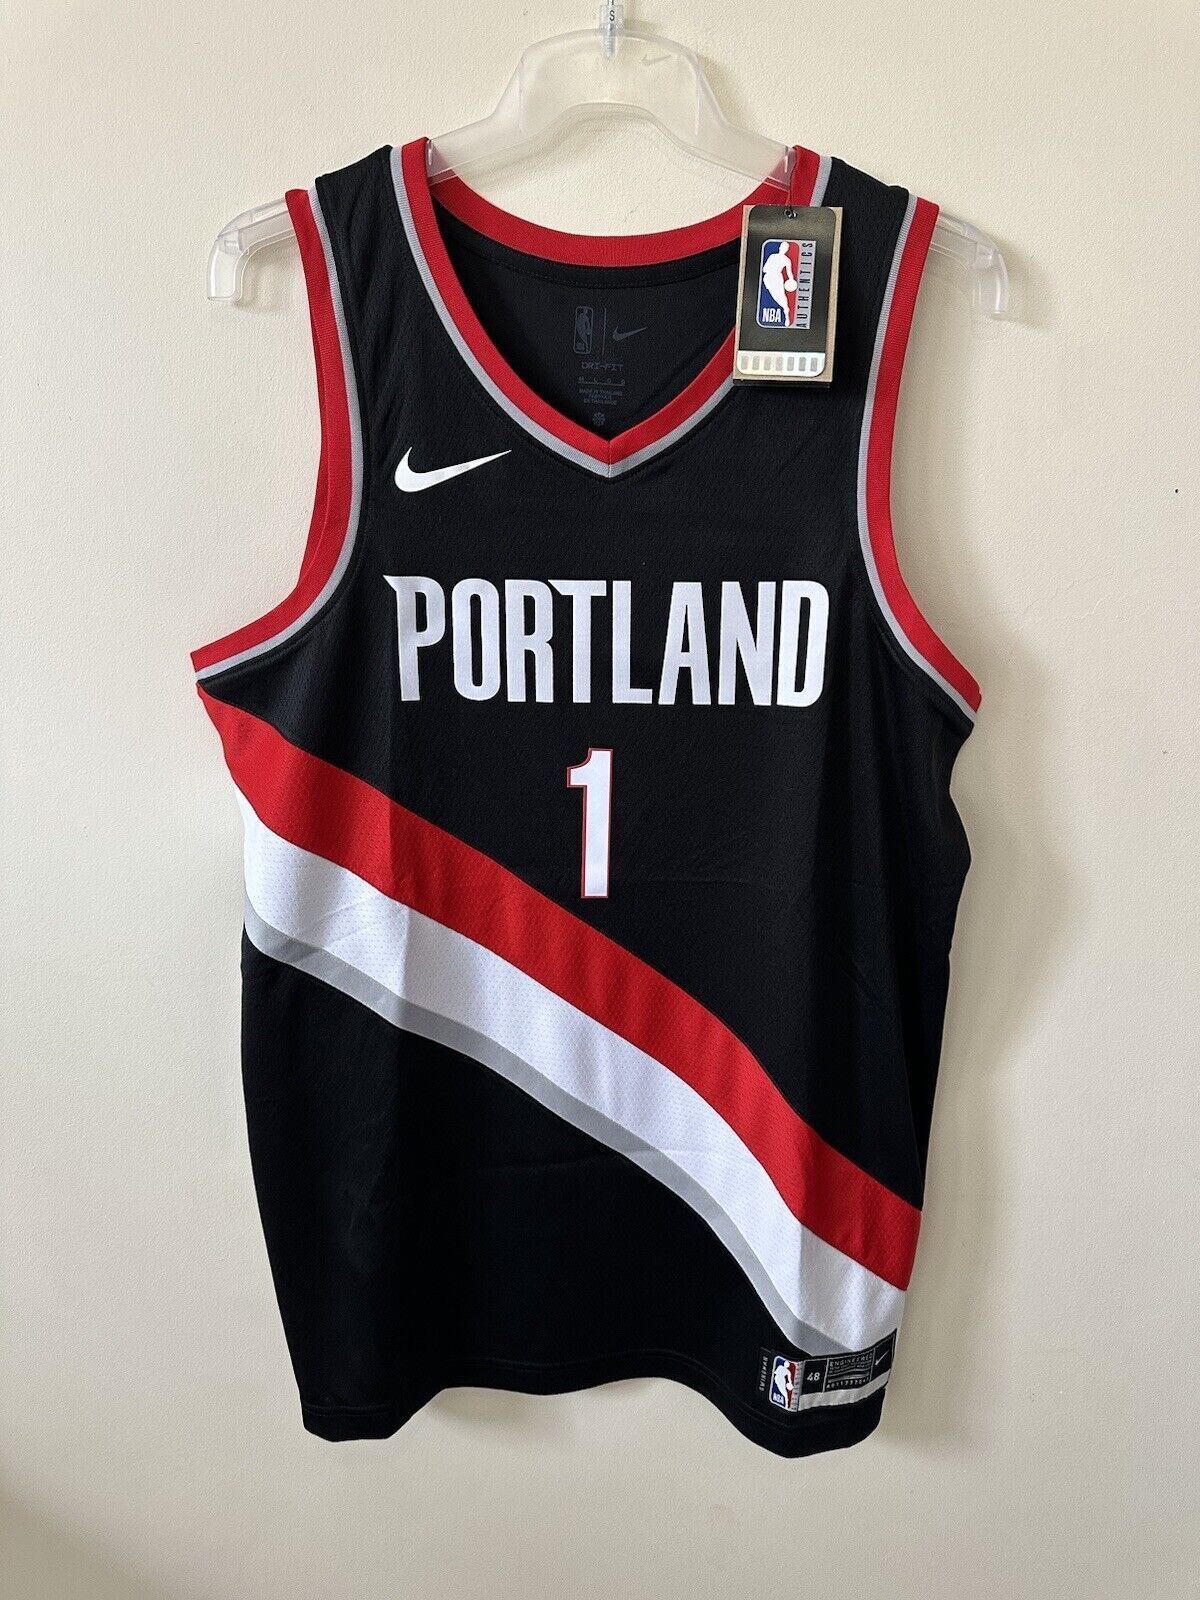 Nike NBA Portland Trail Blazers Swingman Jersey SIMONS 1 Men’s Large